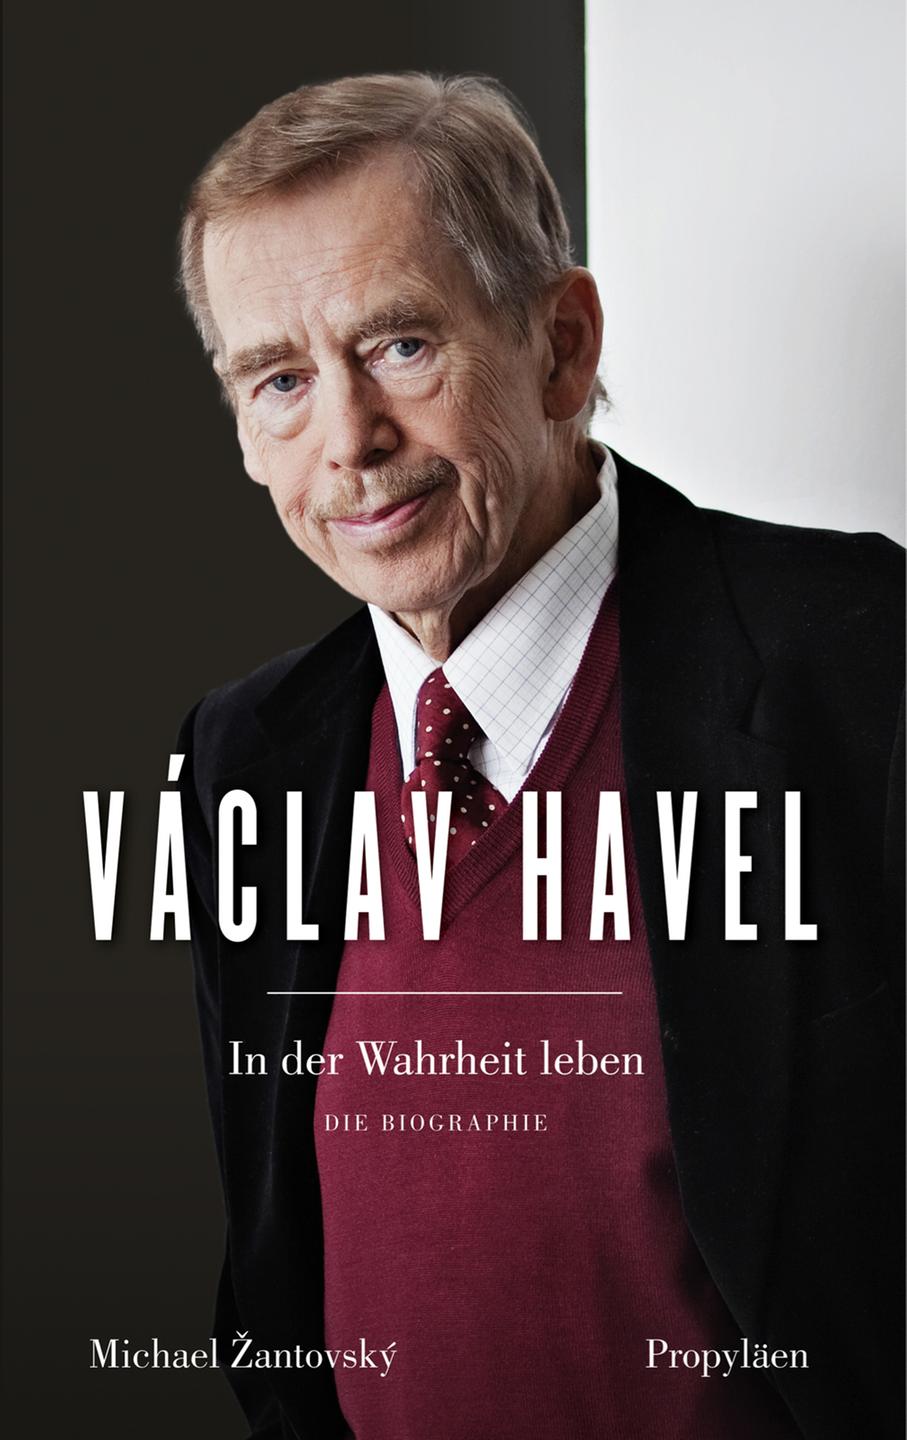 Buchcover: "Vaclav Havel. In der Wahrheit leben" von Michael Zantovsky